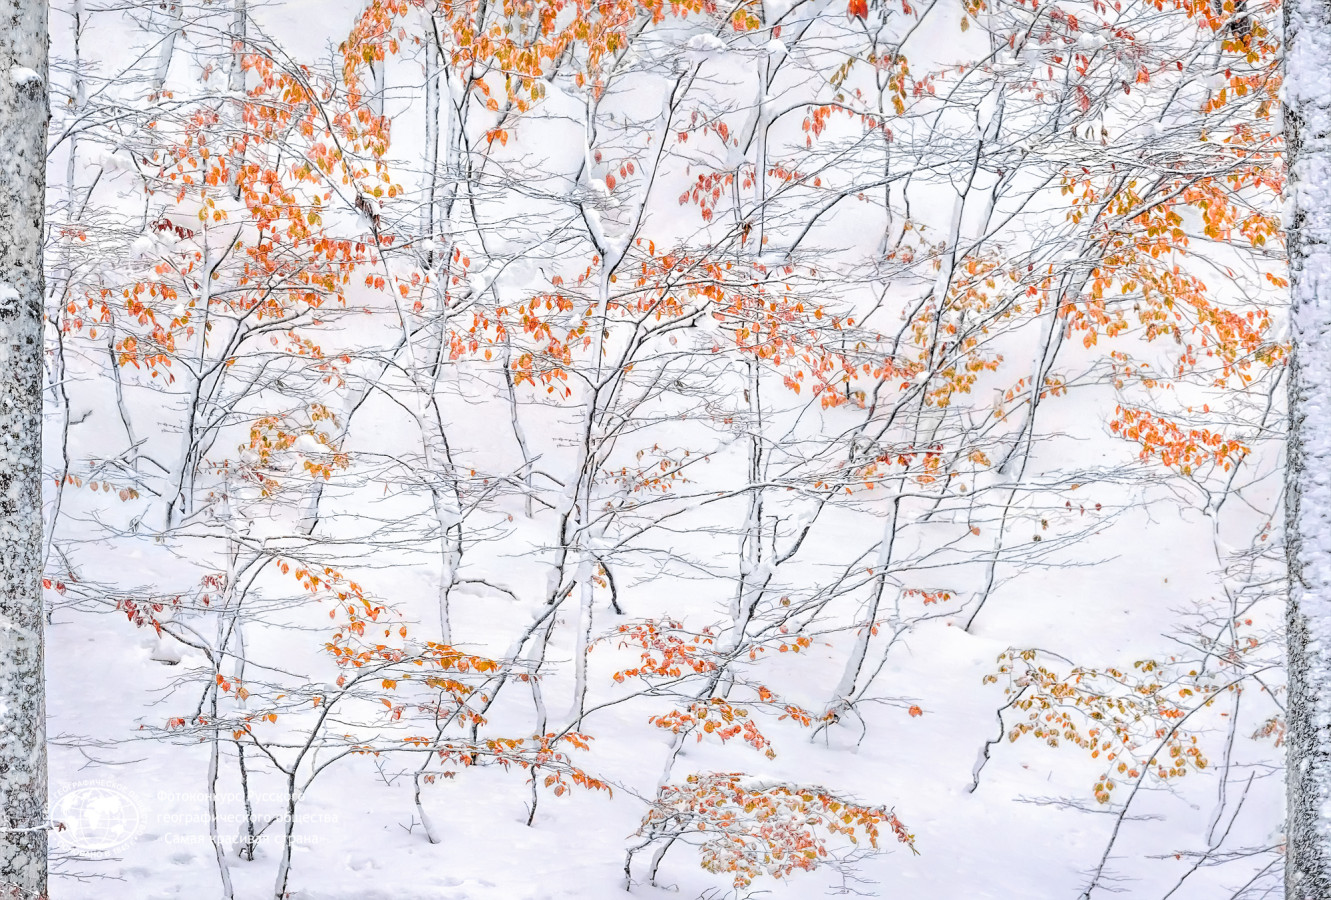 Встреча осени и зимы. Фото: Елена Пахалюк, участница фотоконкурса РГО «Самая красивая страна»